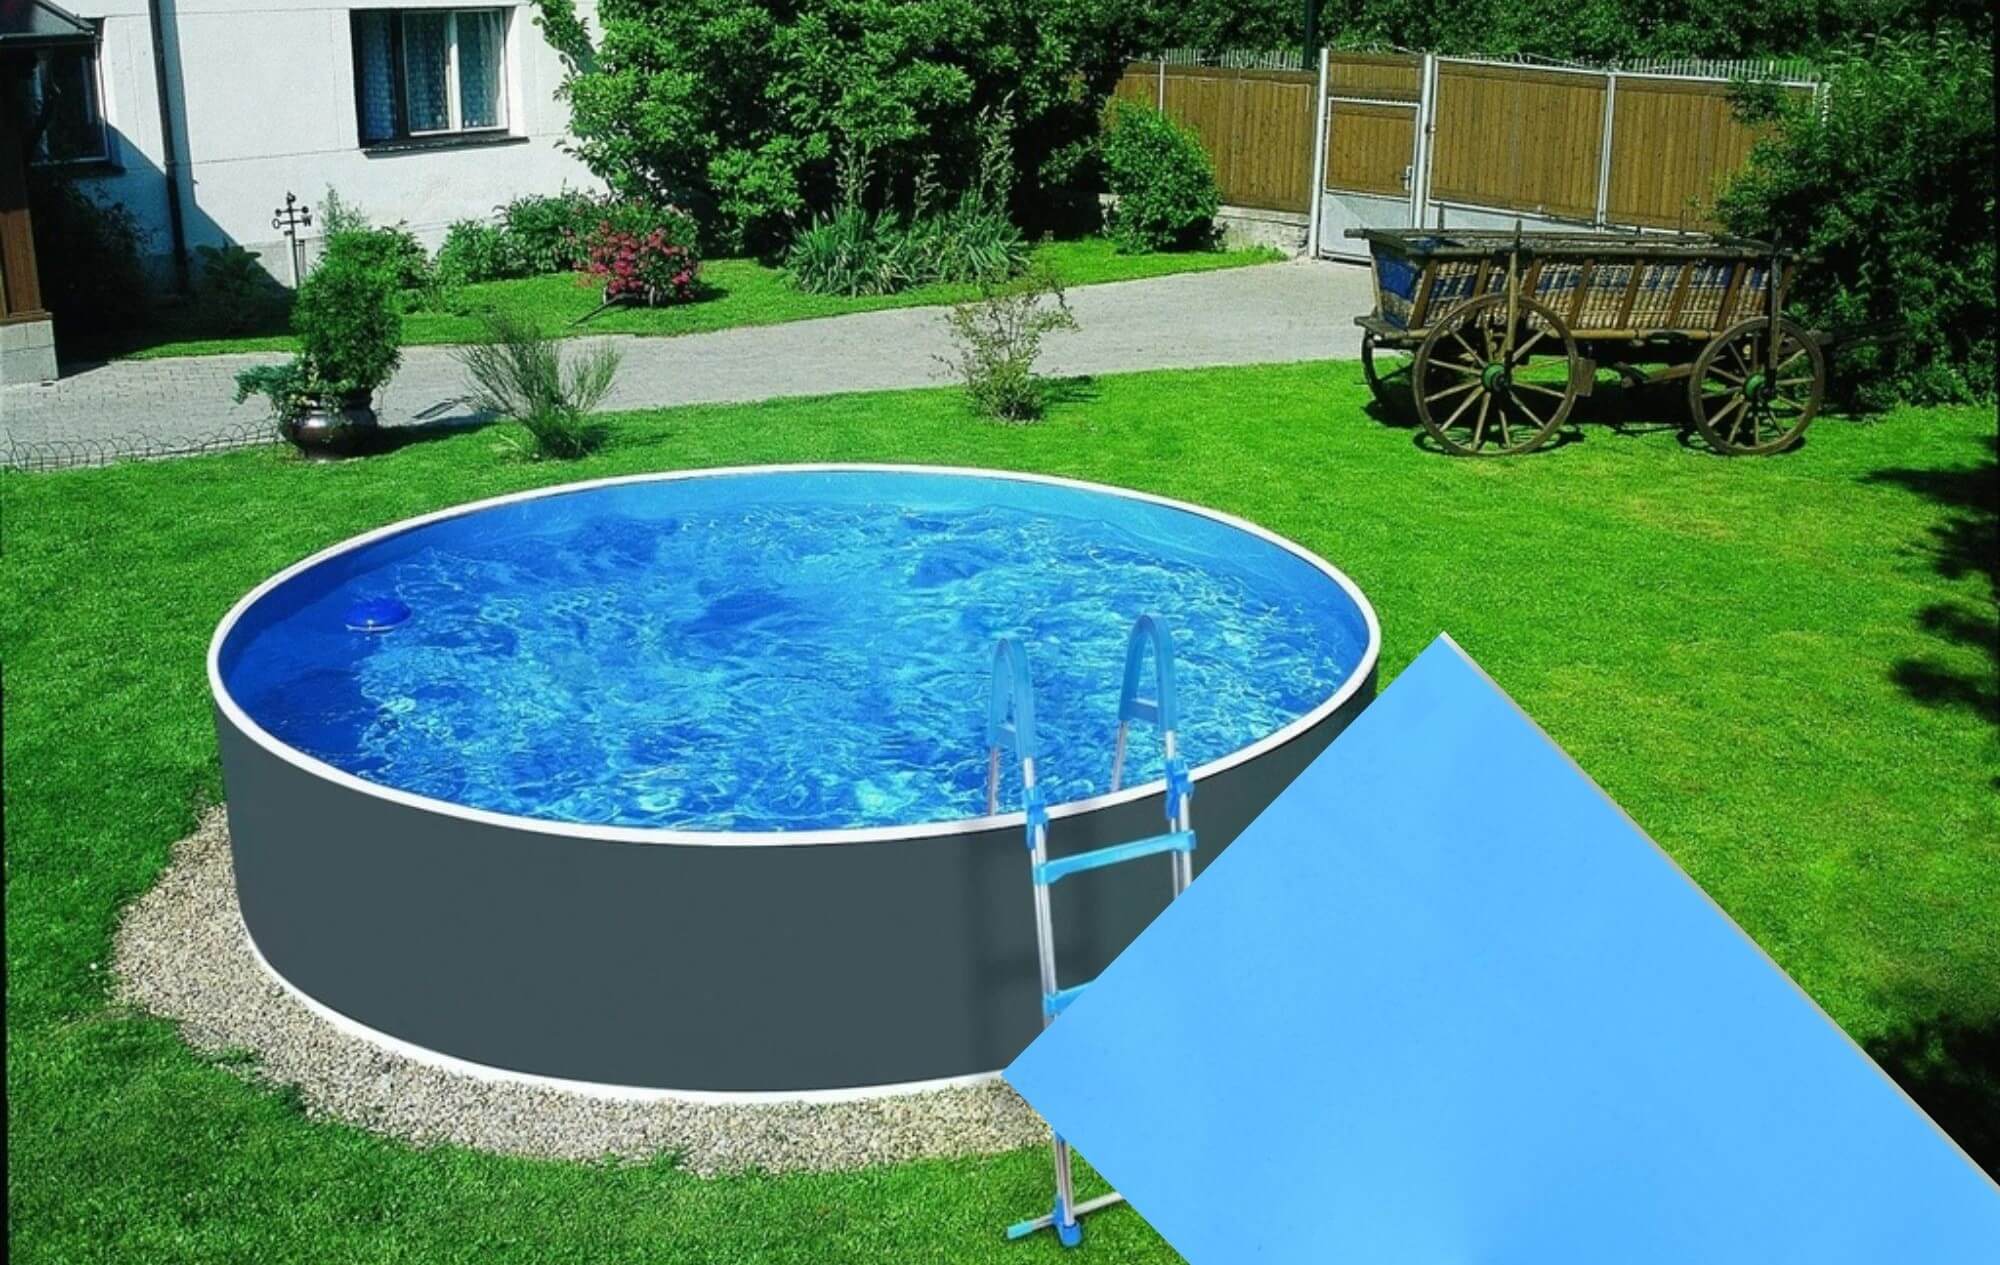 Planet Pool Náhradní bazénová fólie Blue pro bazén průměr 3,6 m x 1,1 m